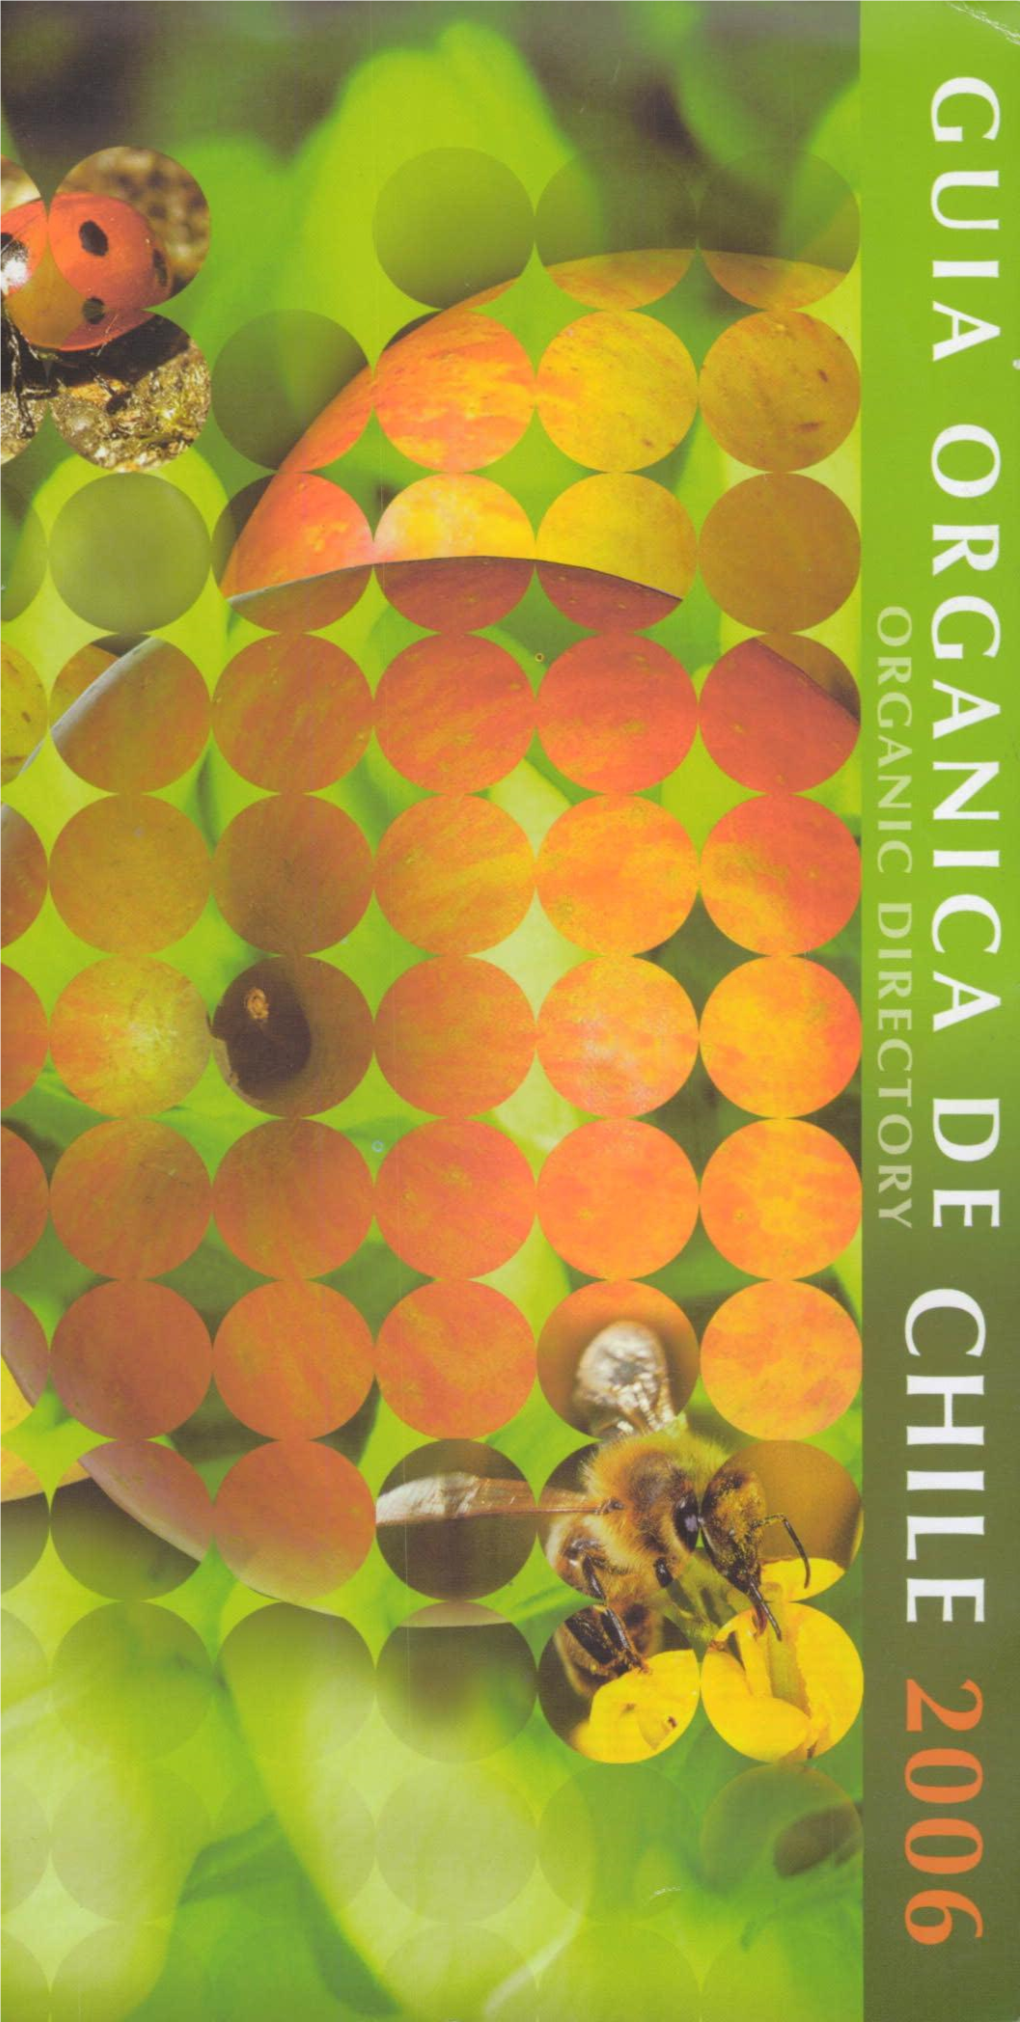 Guia Organica De Chile 2006.Pdf